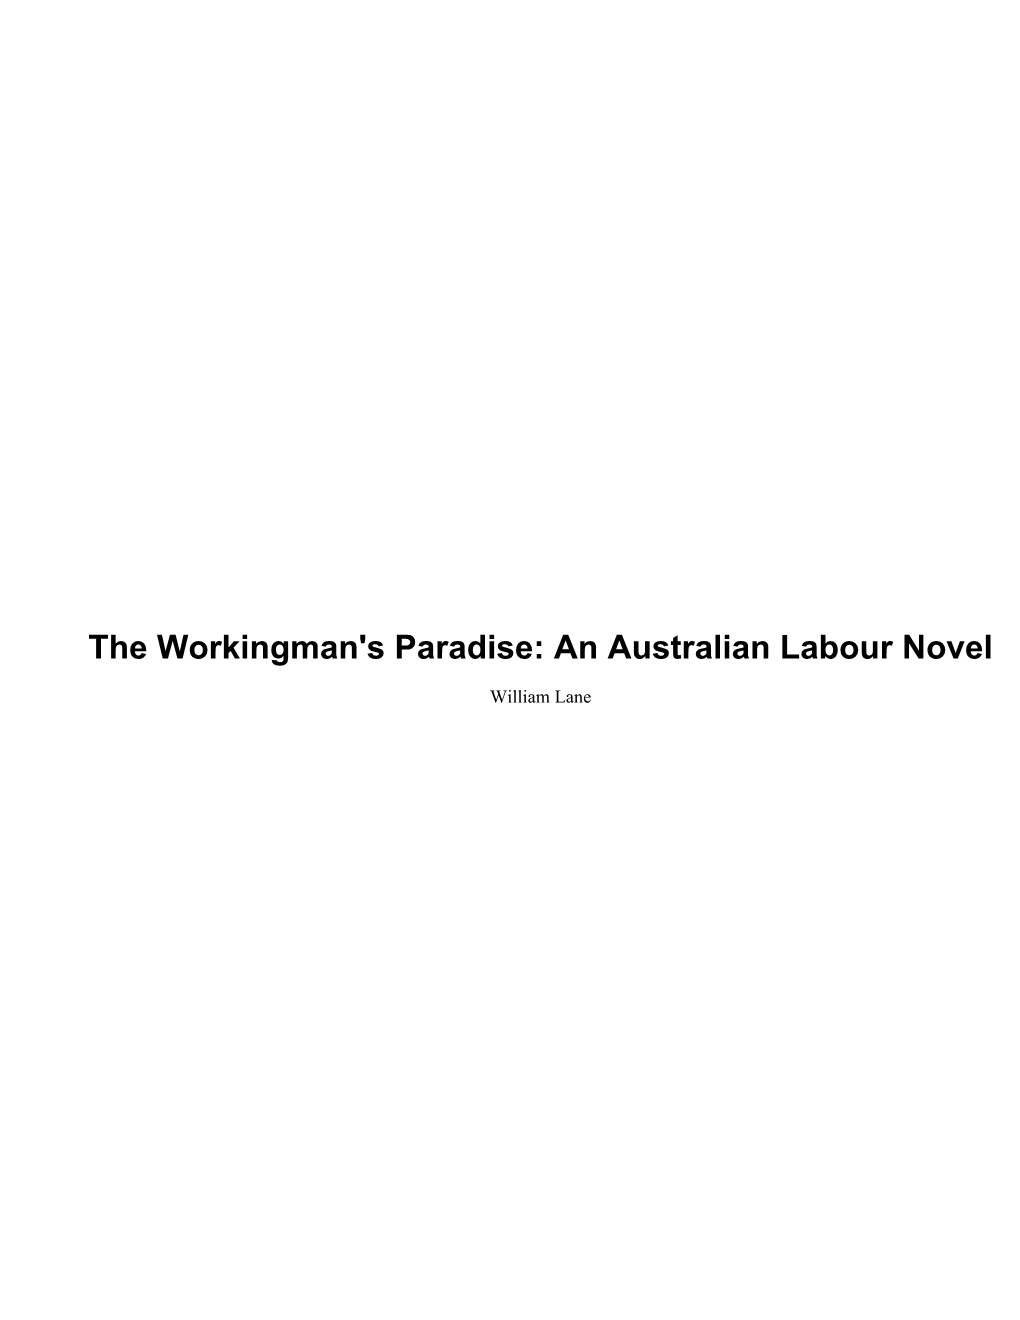 An Australian Labour Novel